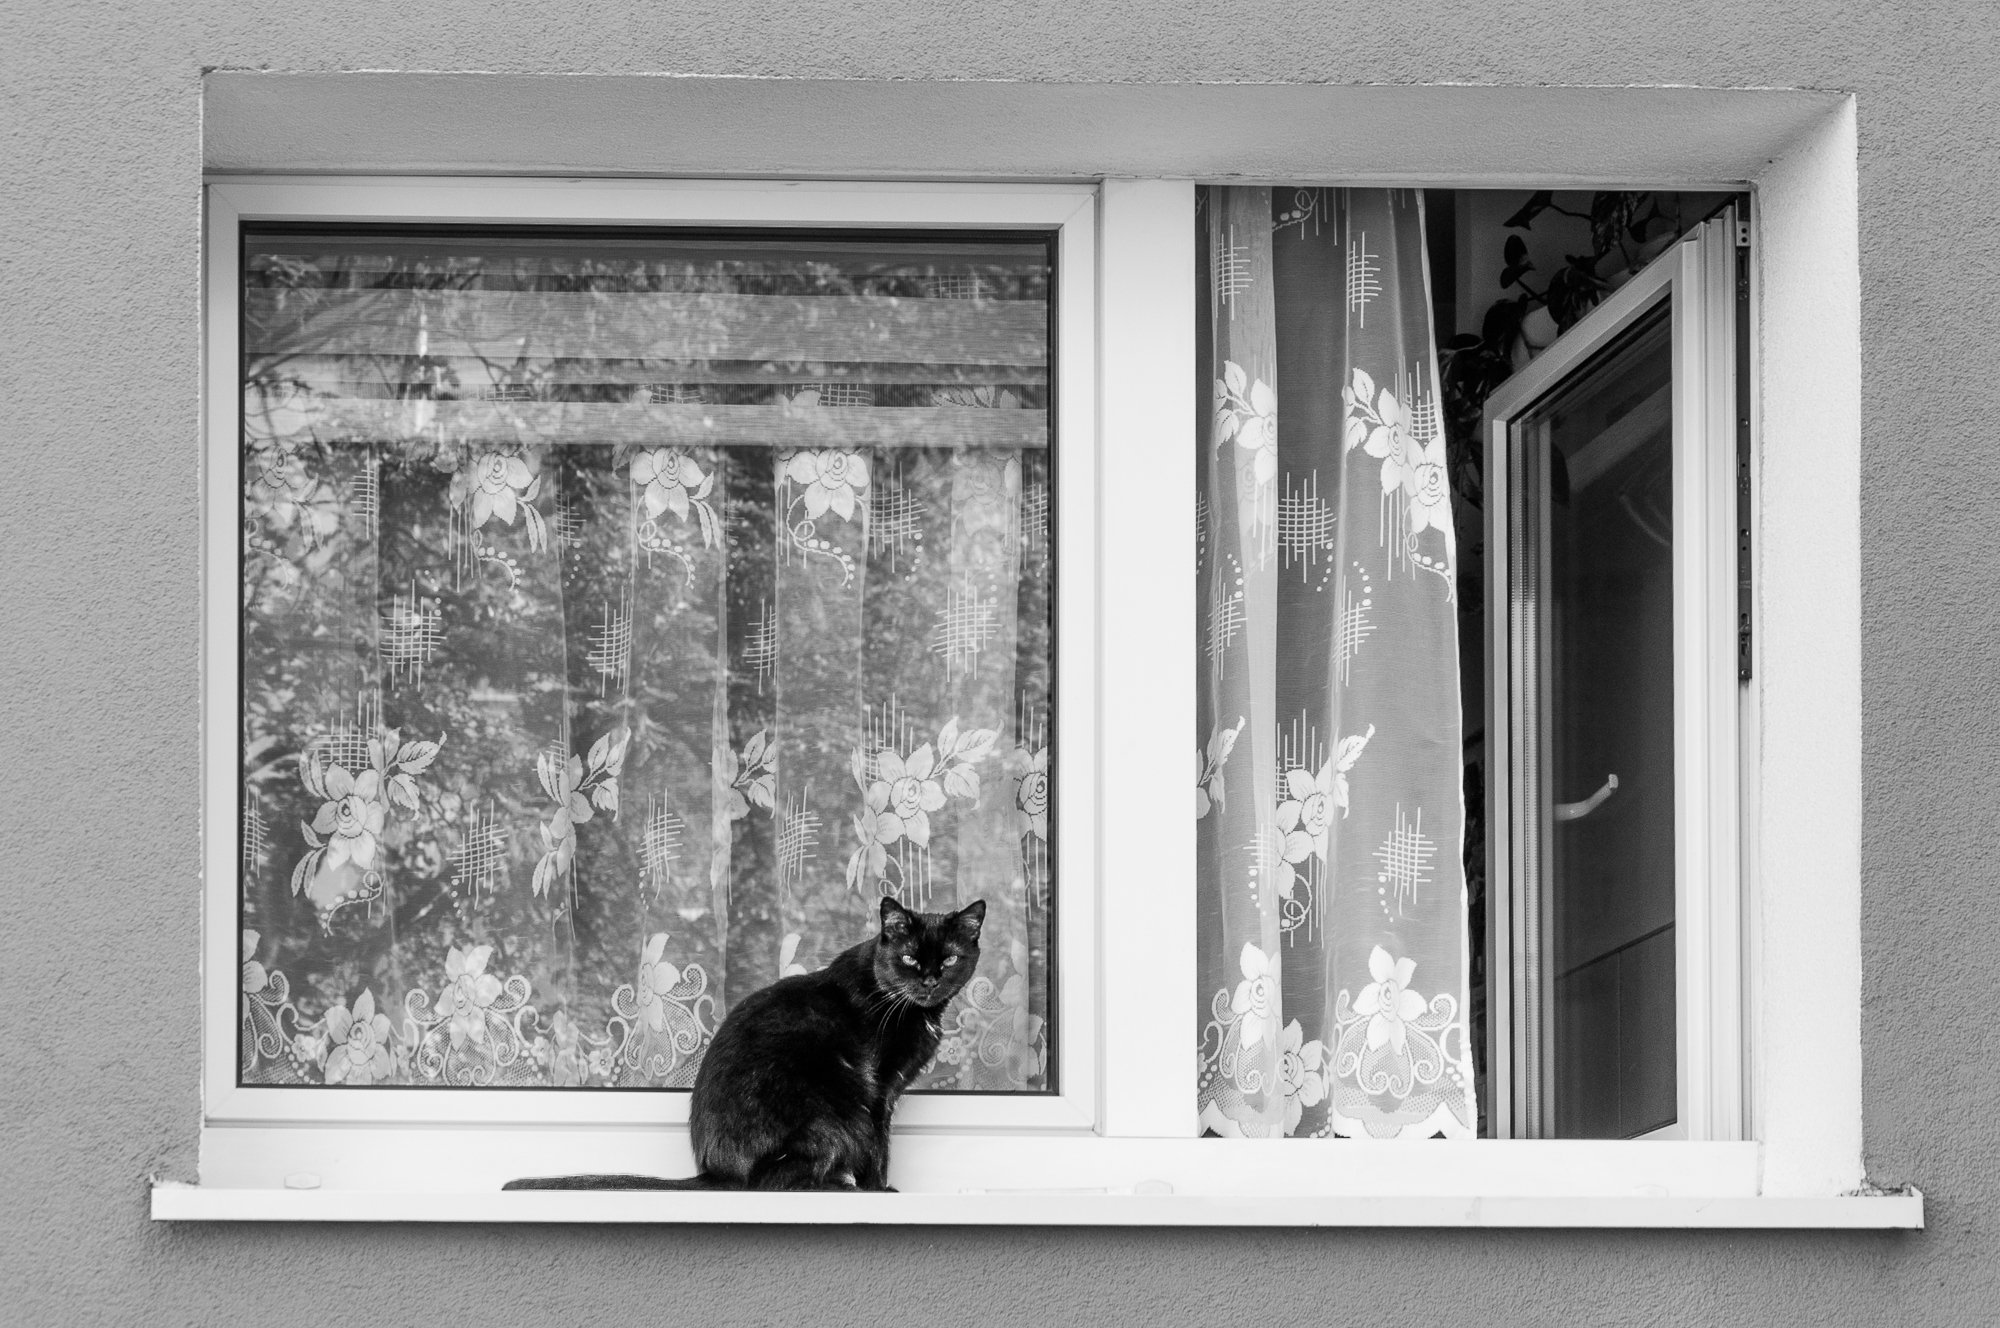 Adam Mazek Photography Warsaw (Warszawa) 2017. Post: "Self-publishing." Minimalism. Cat on the window.